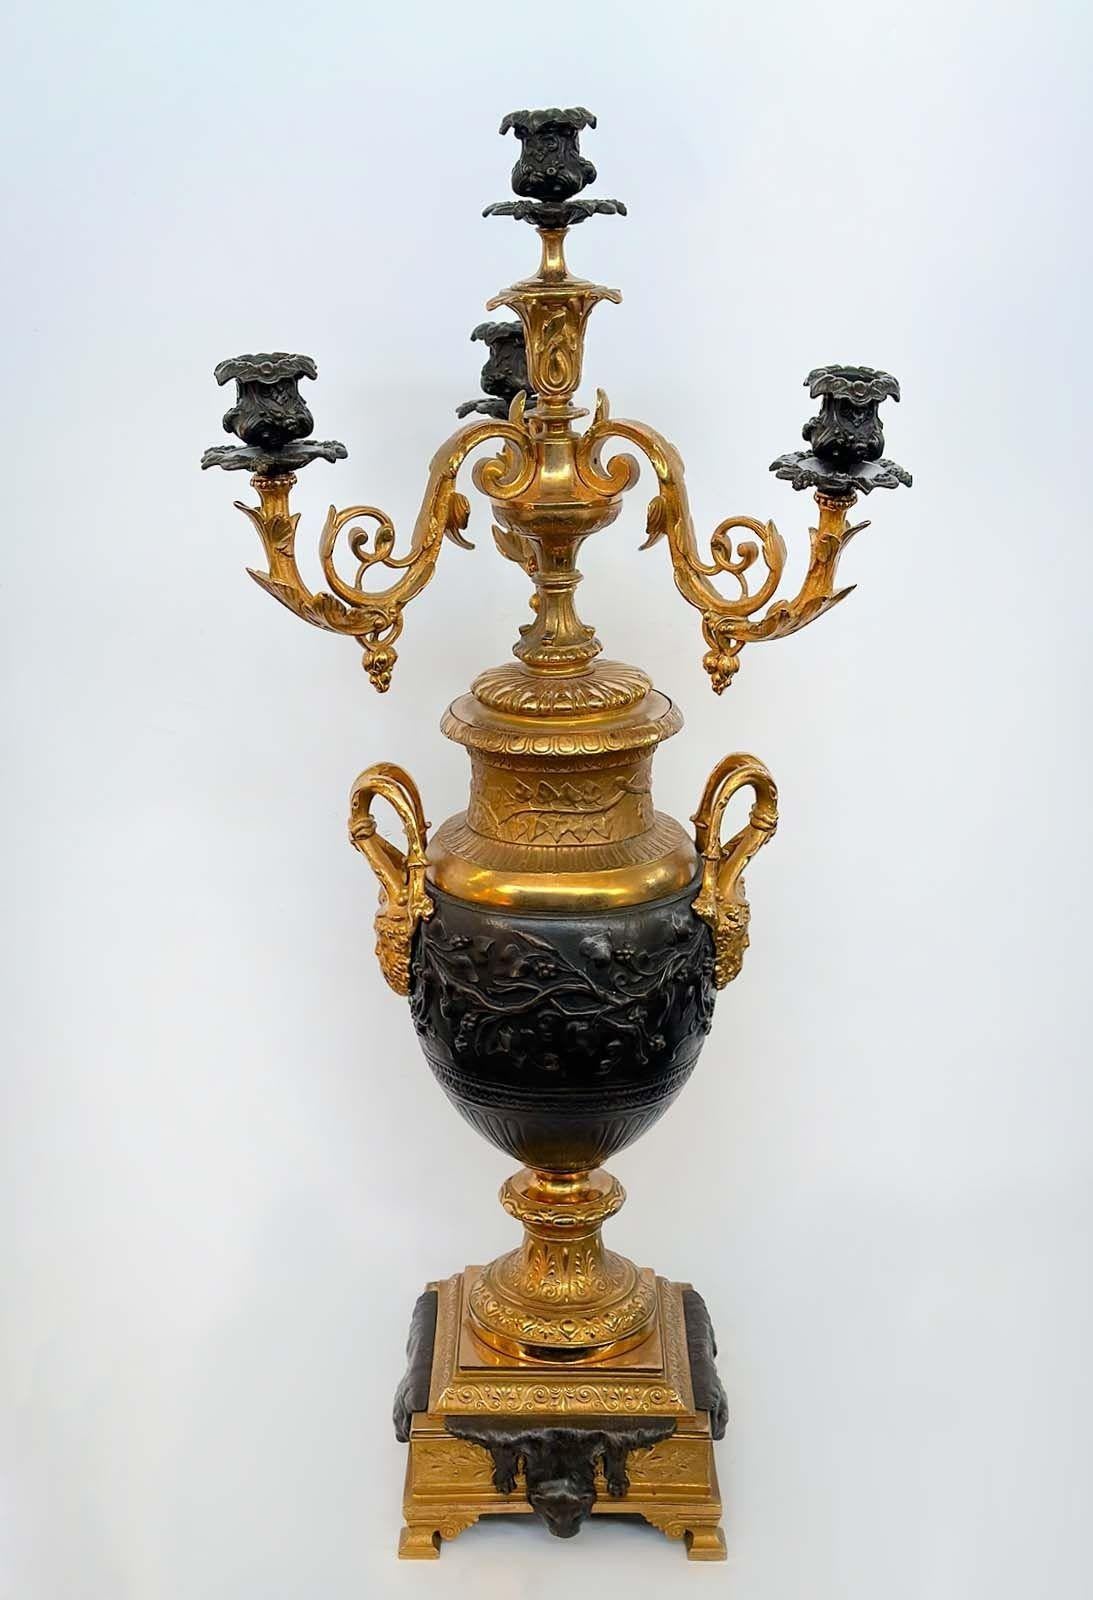 Paar vergoldete und patinierte Bronzekandelaber mit vier Lichtern im Stil von Napoleon III. Hergestellt in Frankreich, Ende des 19. Jahrhunderts. Die filigrane Verarbeitung verleiht jedem Raum eine besondere Ausstrahlung.
Abmessungen:
29,25 